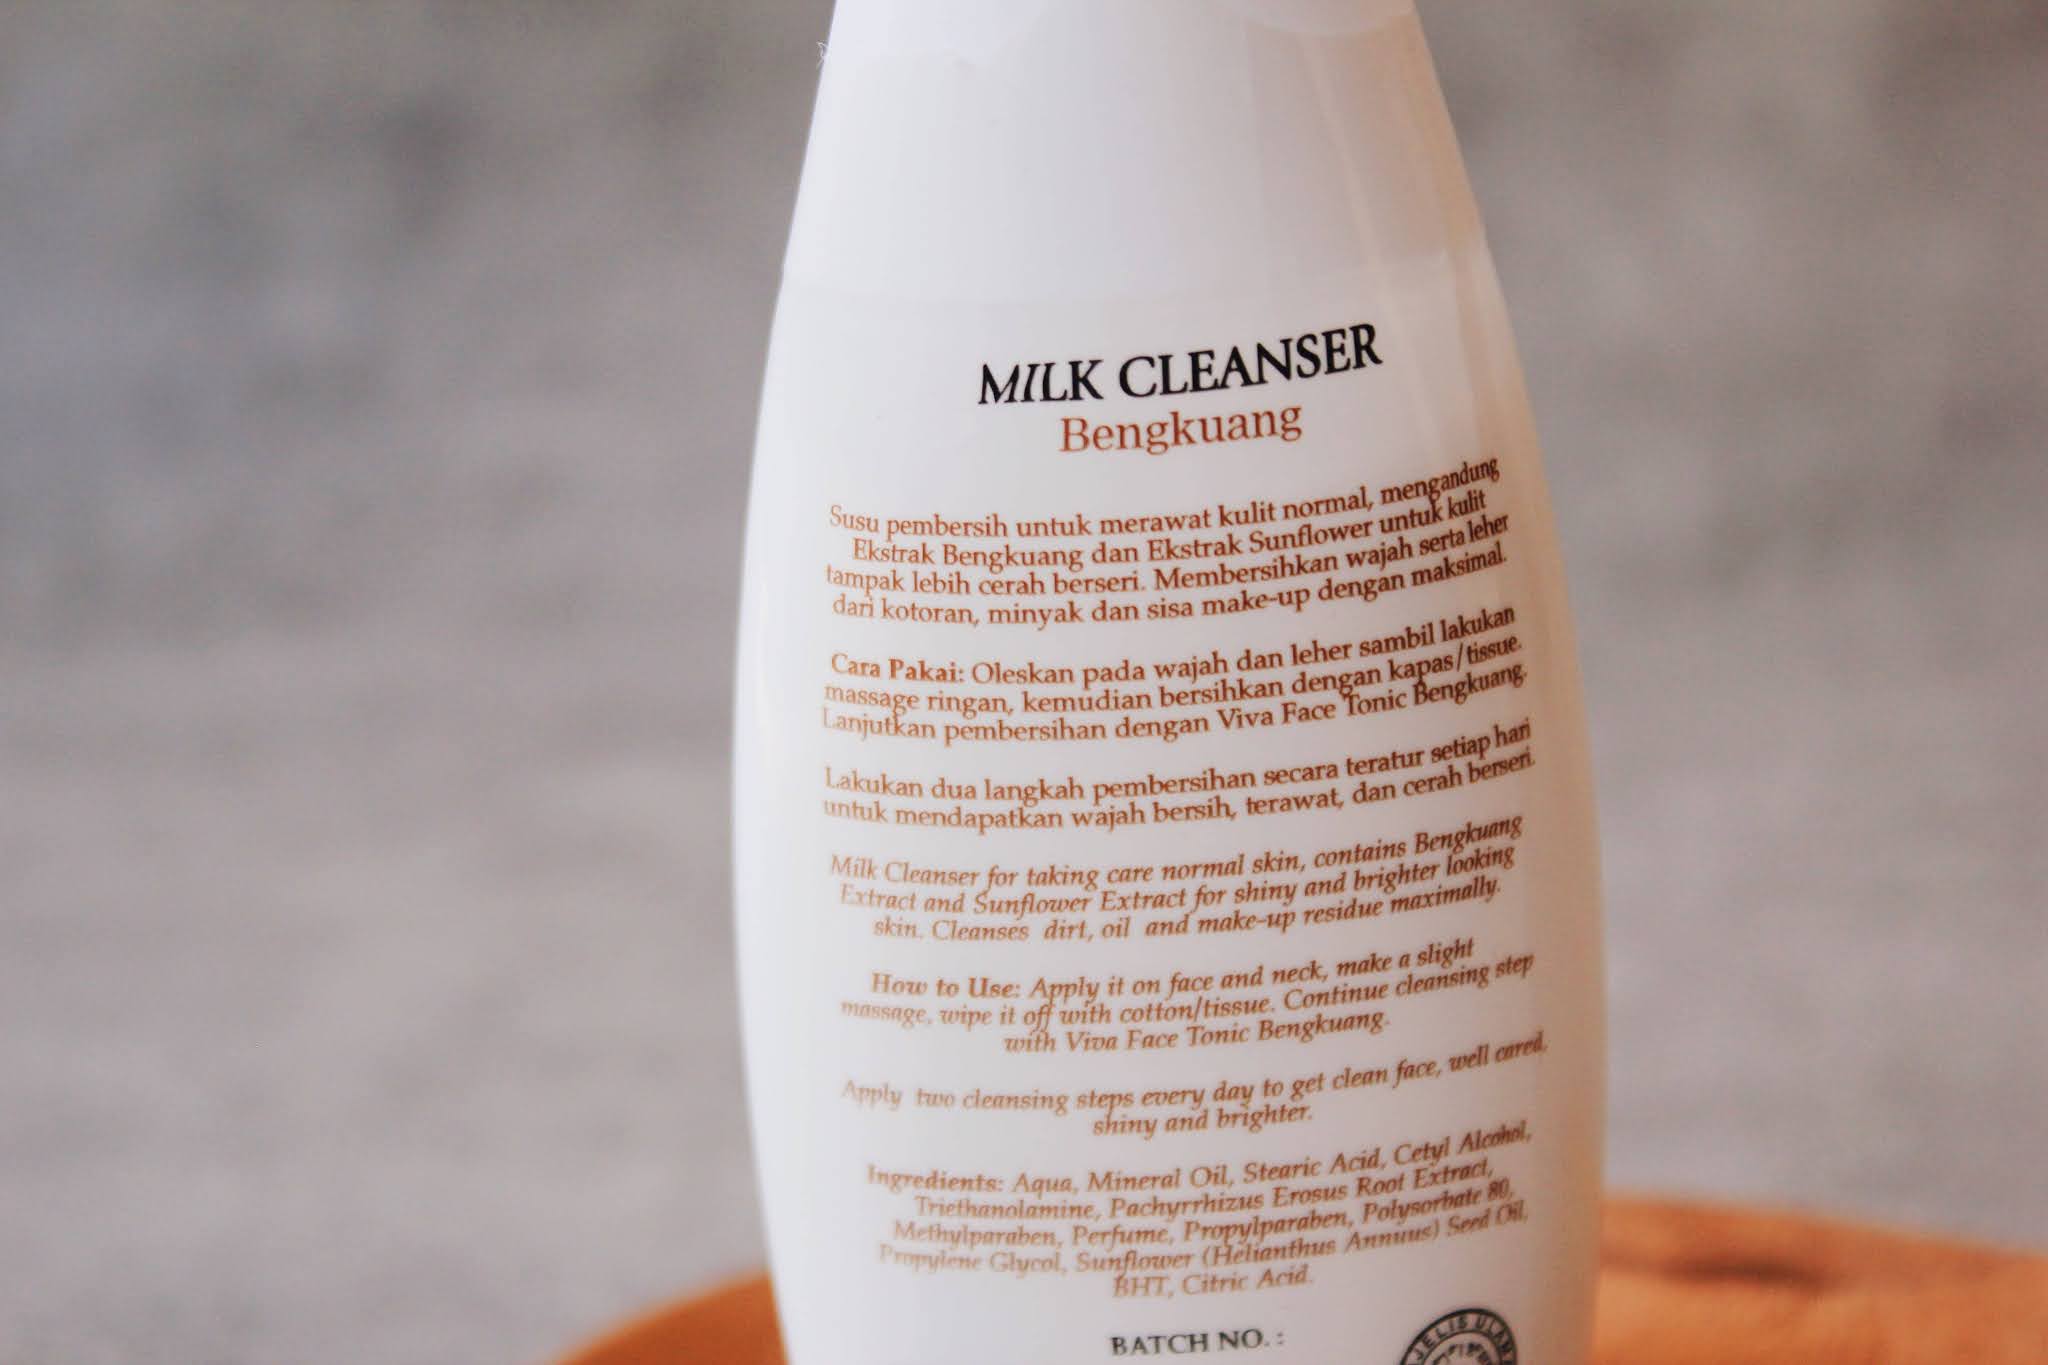 Viva milk cleanser bengkuang